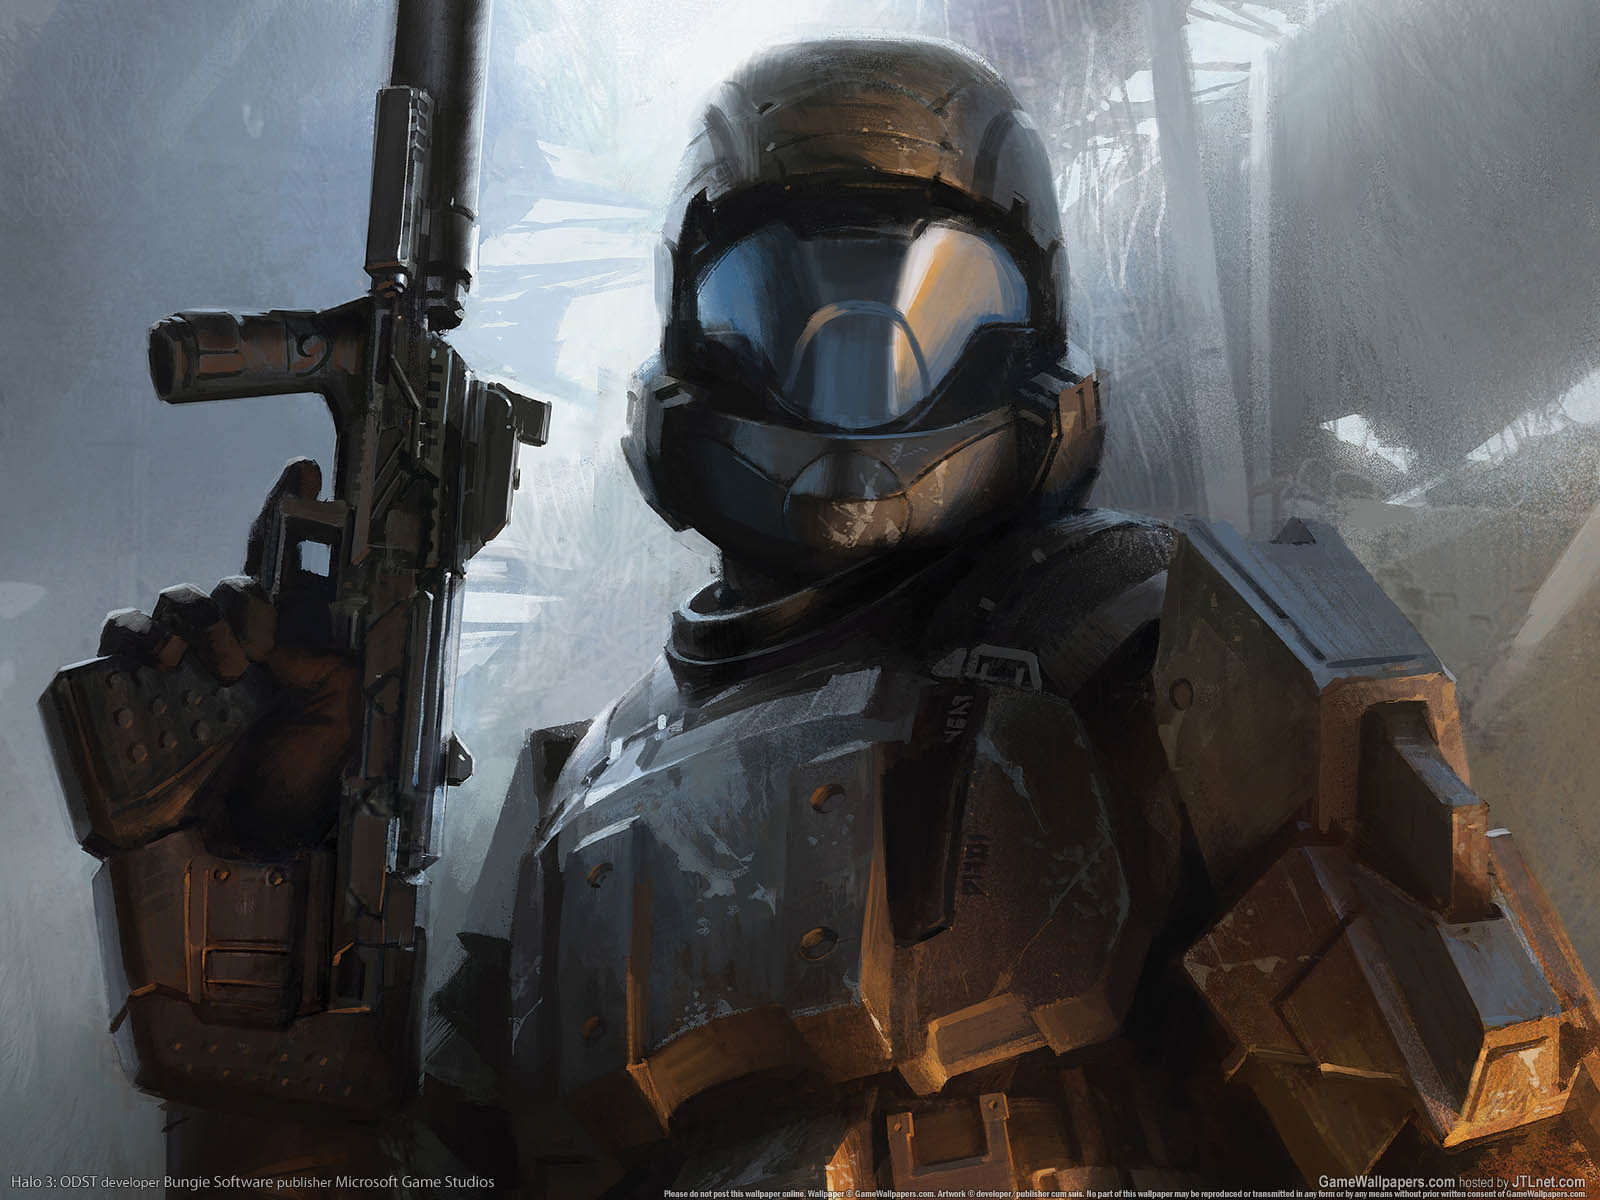 Halo 3: ODST fond d'cran 01 1600x1200